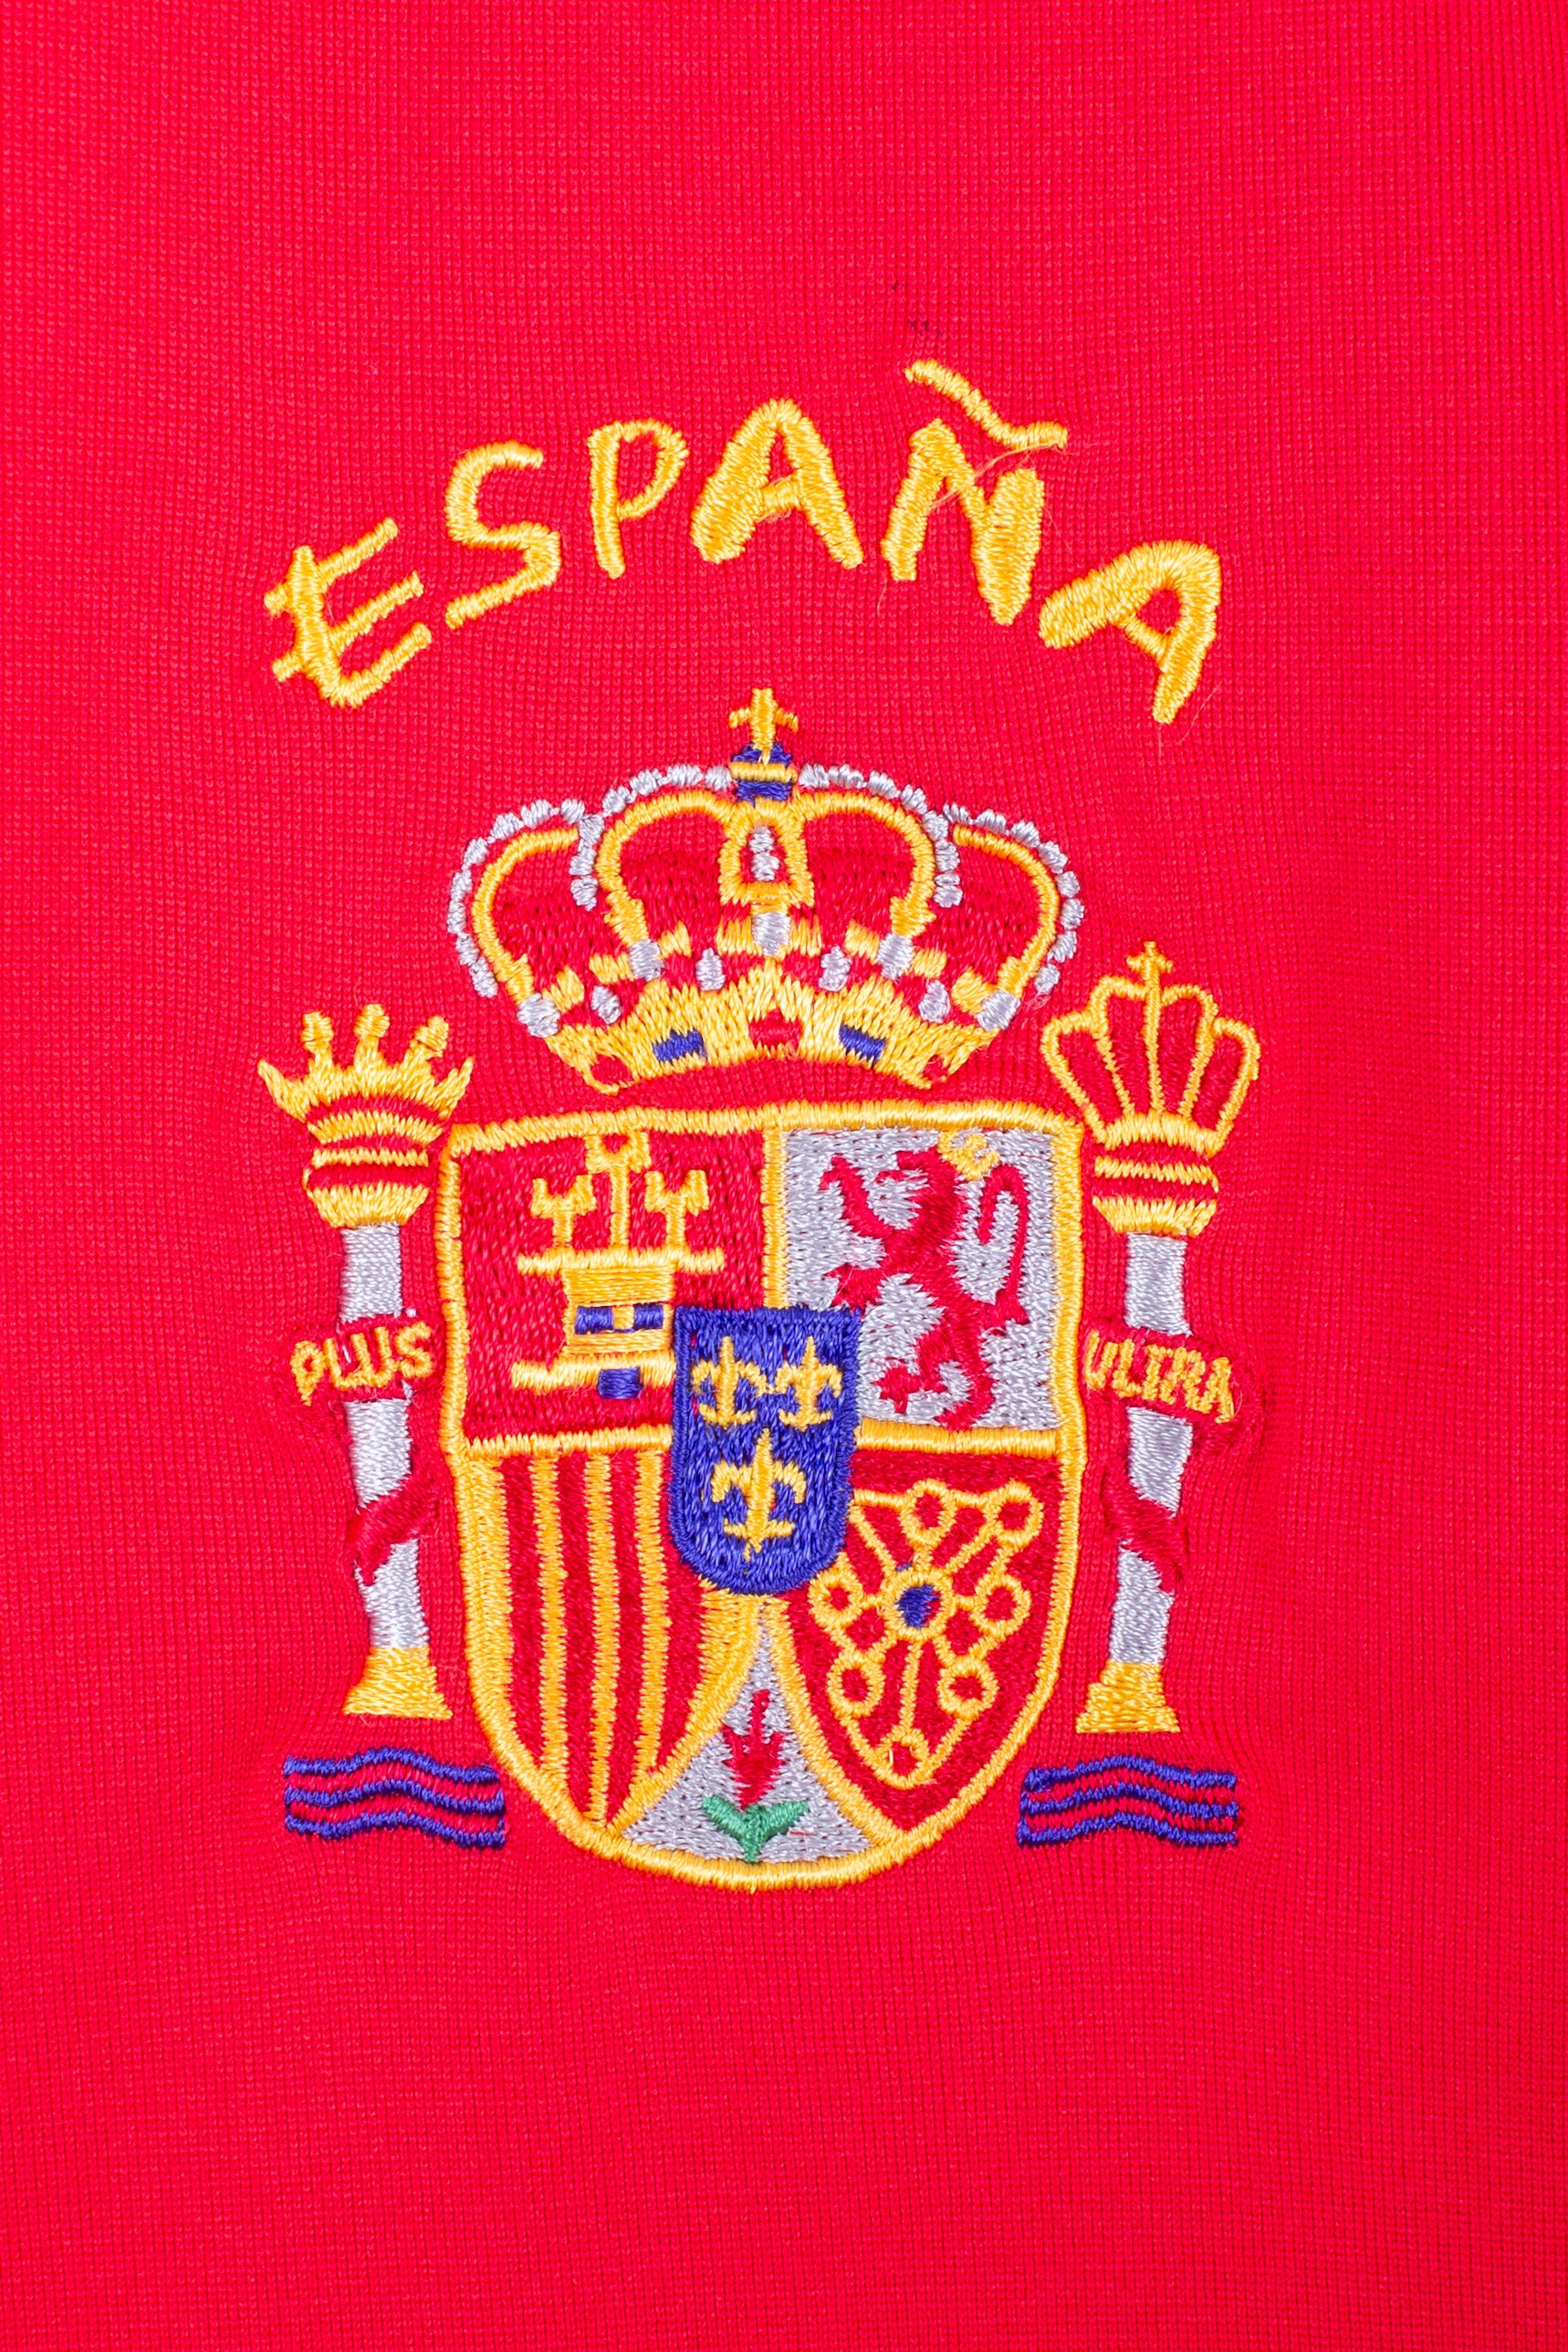 Spain 2004 Home Shirt